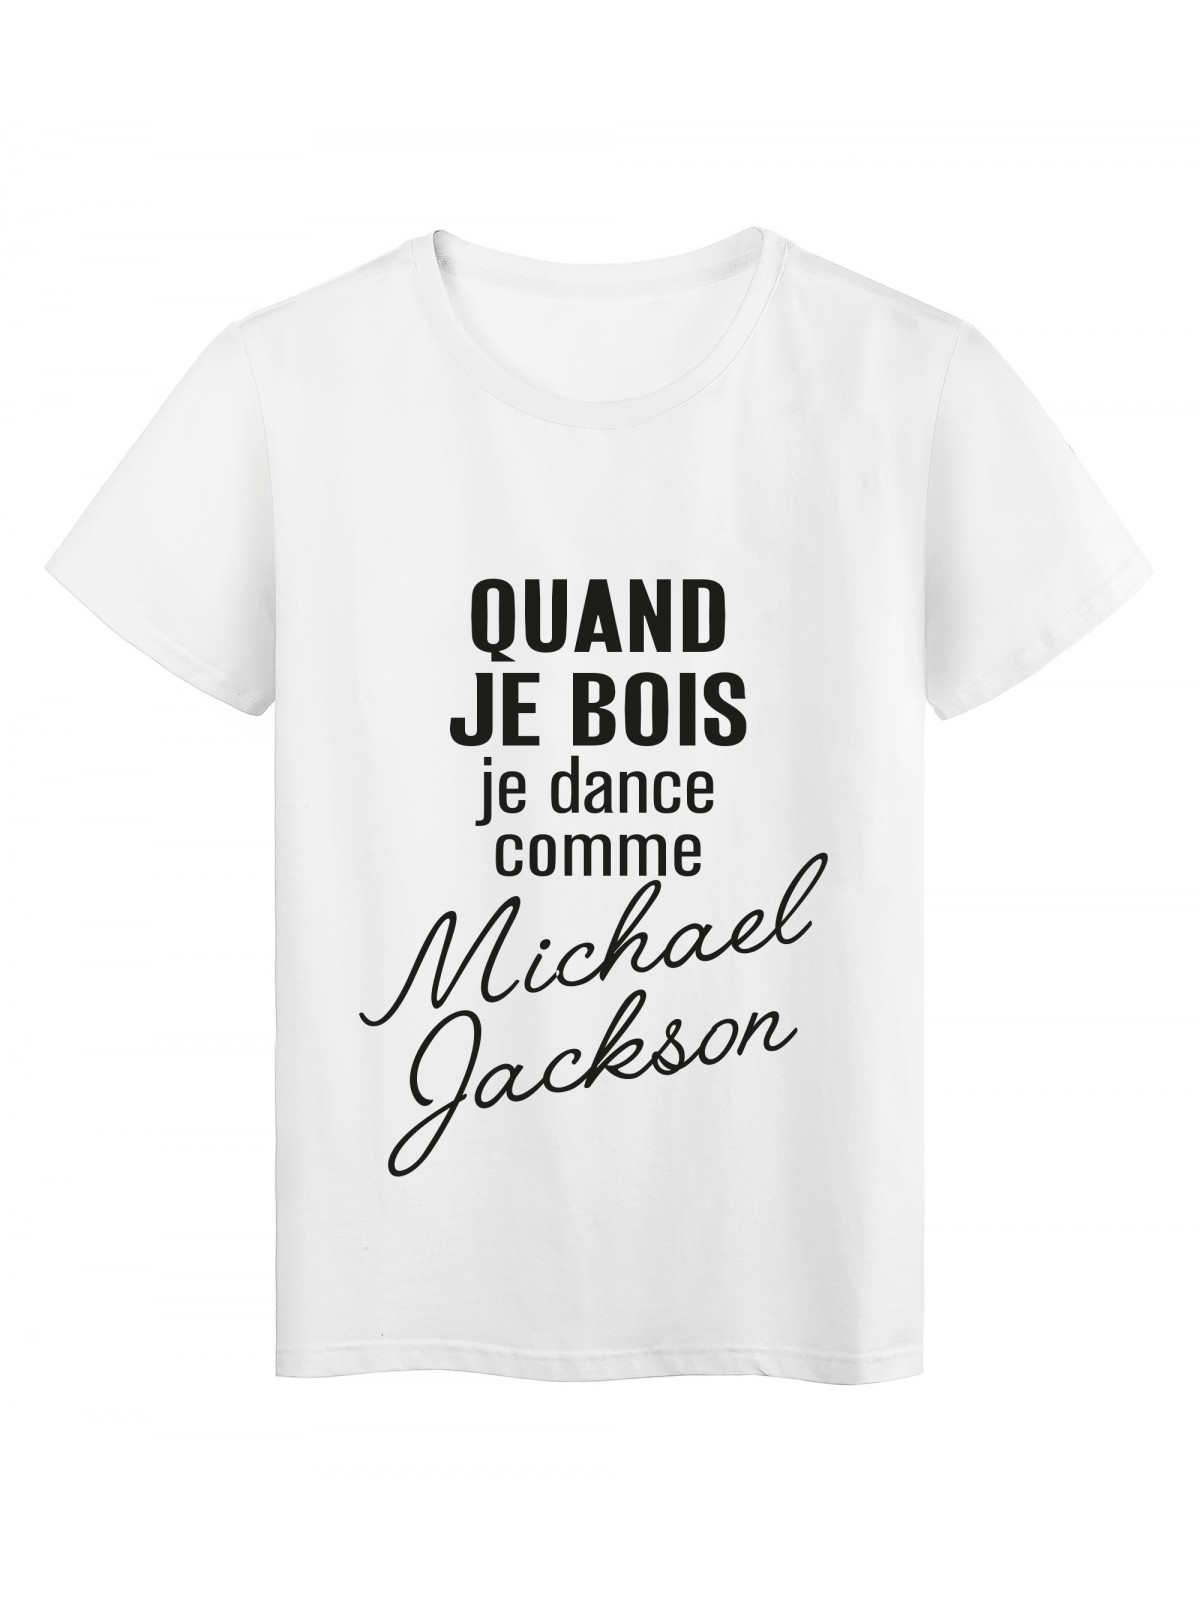 T-Shirt imprimÃ© citation humour Quand je bois je dance comme michael jackson